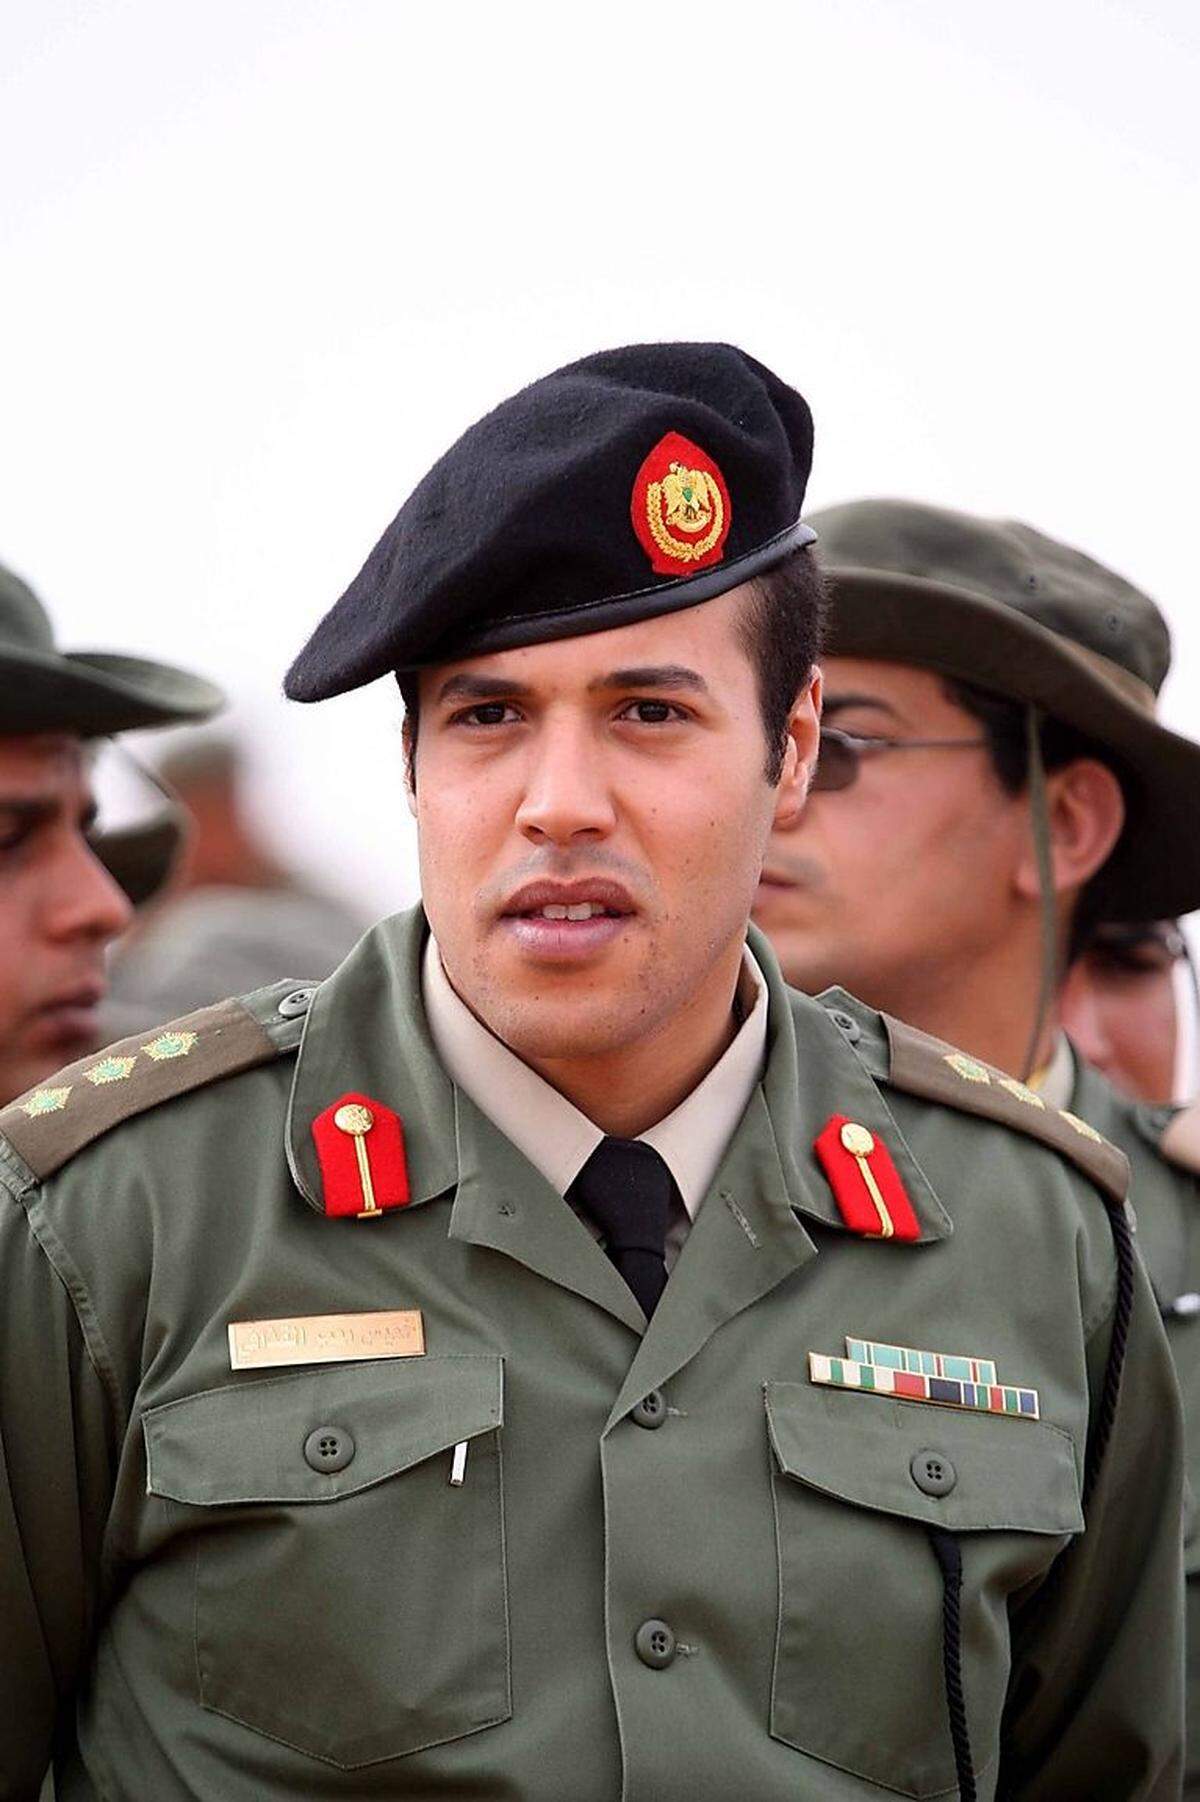 Der jüngste Sohn Gaddafis wurde 1983 geboren. Er kommandierte eine berüchtigte Eliteeinheit und galt als Hardliner. Der UN-Sicherheitsrat warf ihm vor, in die Repression von Demonstrationen verwickelt zu sein. Sein Tod wurde während der Revolte gegen Gaddafi mehrfach vermeldet und hat sich bisher nie bestätigt.